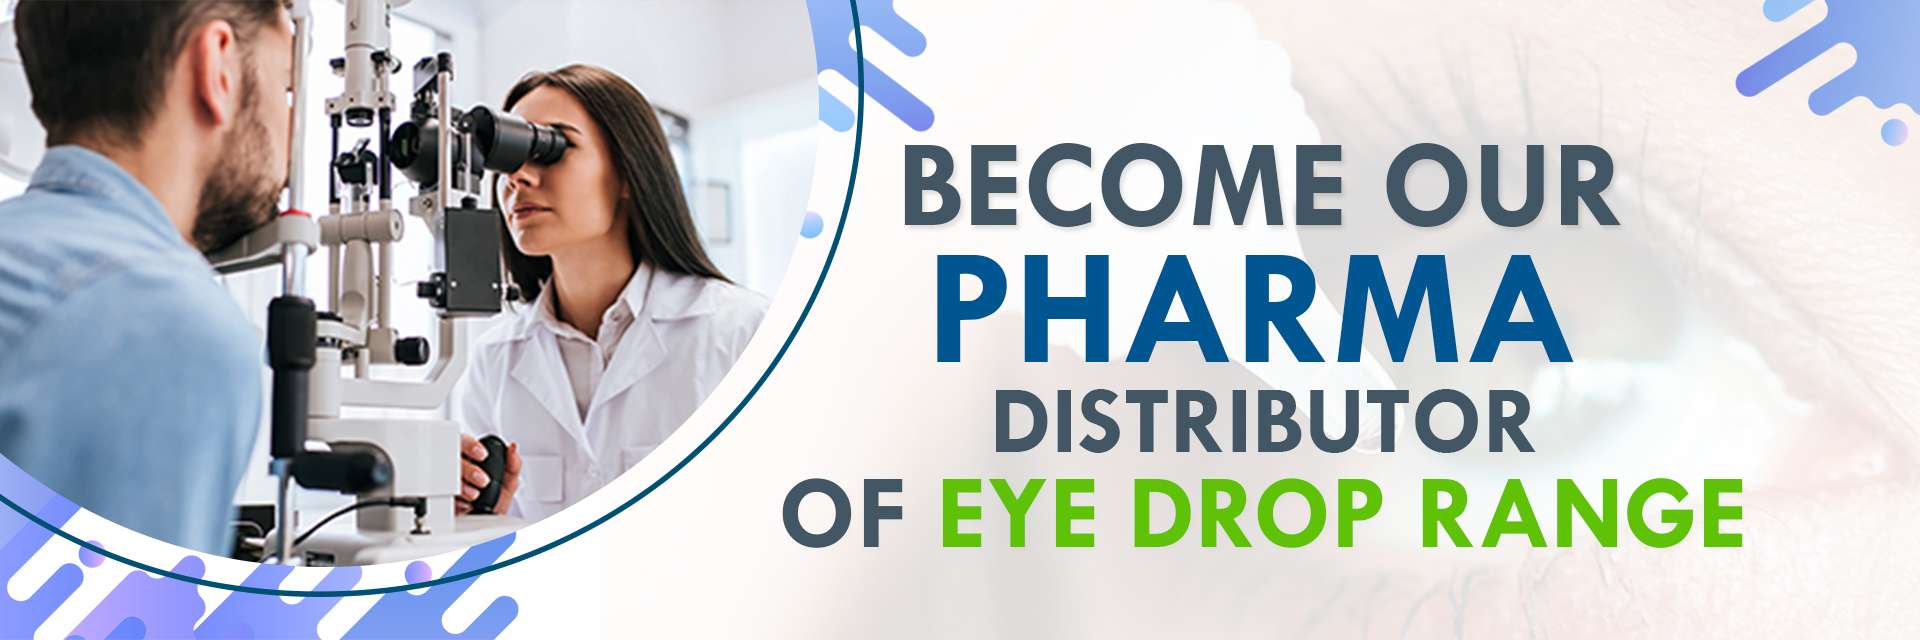 Become Our Pharma Distributor of Eye Drop Range